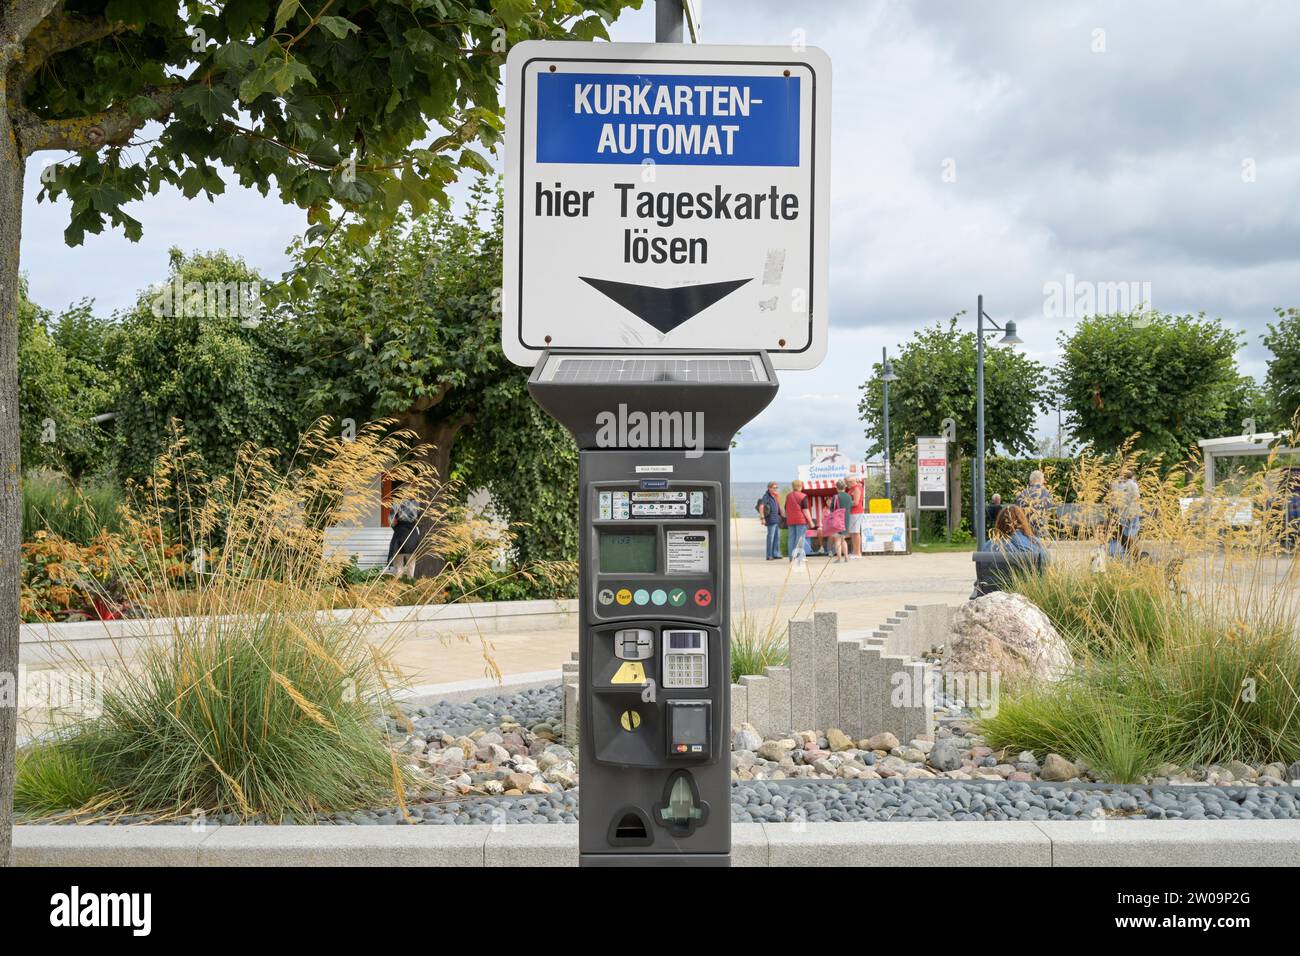 Kurkarten-Automat, Tageskarte, Dünenstraße, Ahlbeck, Usedom, Mecklenburg-Vorpommern, Deutschland Stock Photo